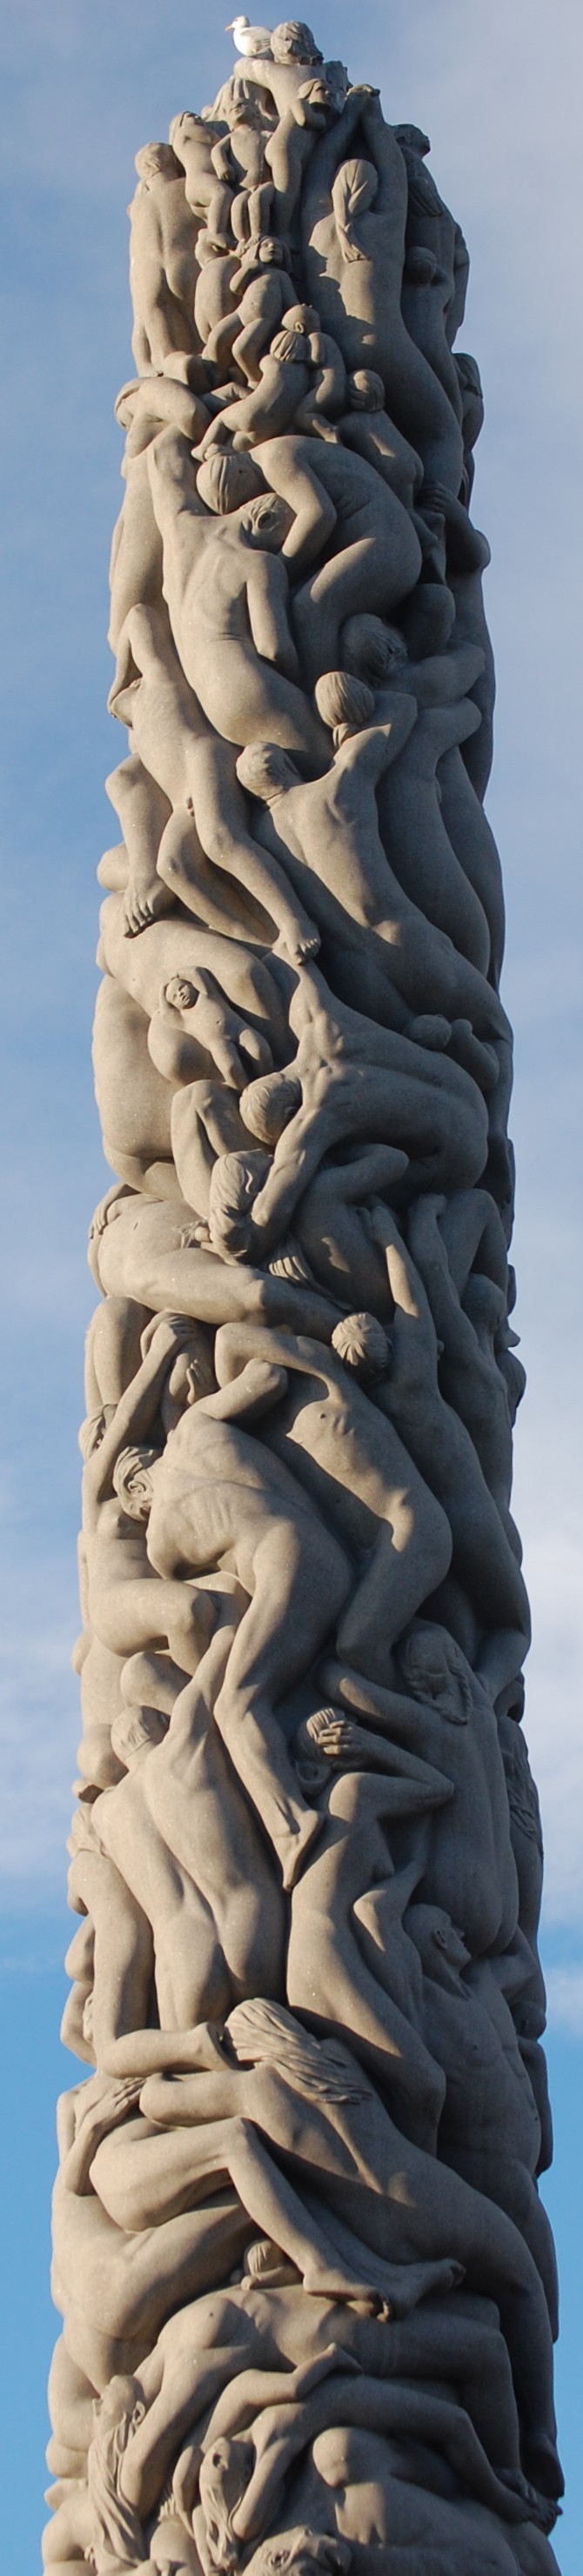 Säule der Menschheit (Vigeland-Park Oslo)